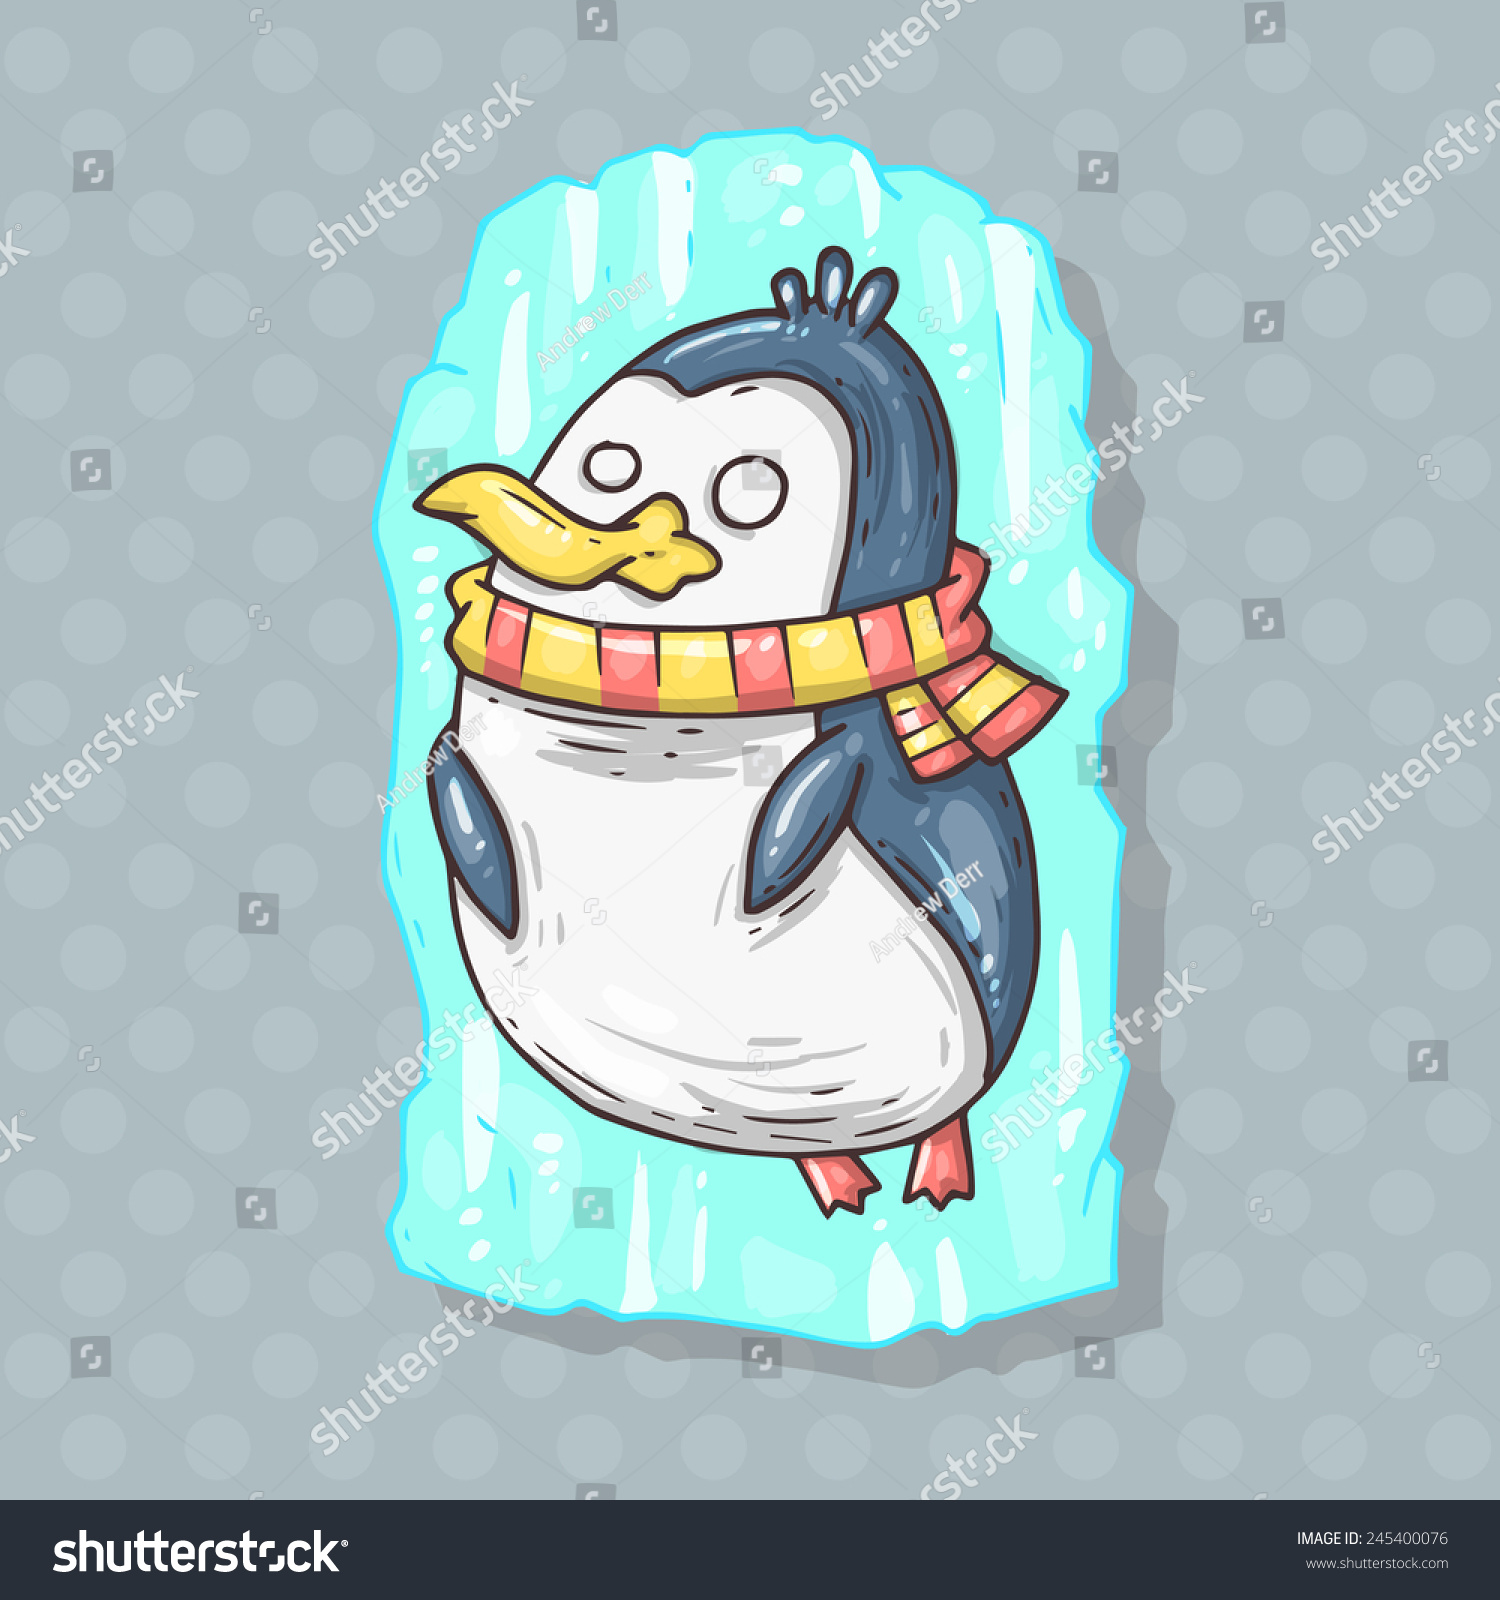 https://image.shutterstock.com/z/stock-vector-frozen-penguin-245400076.jpg